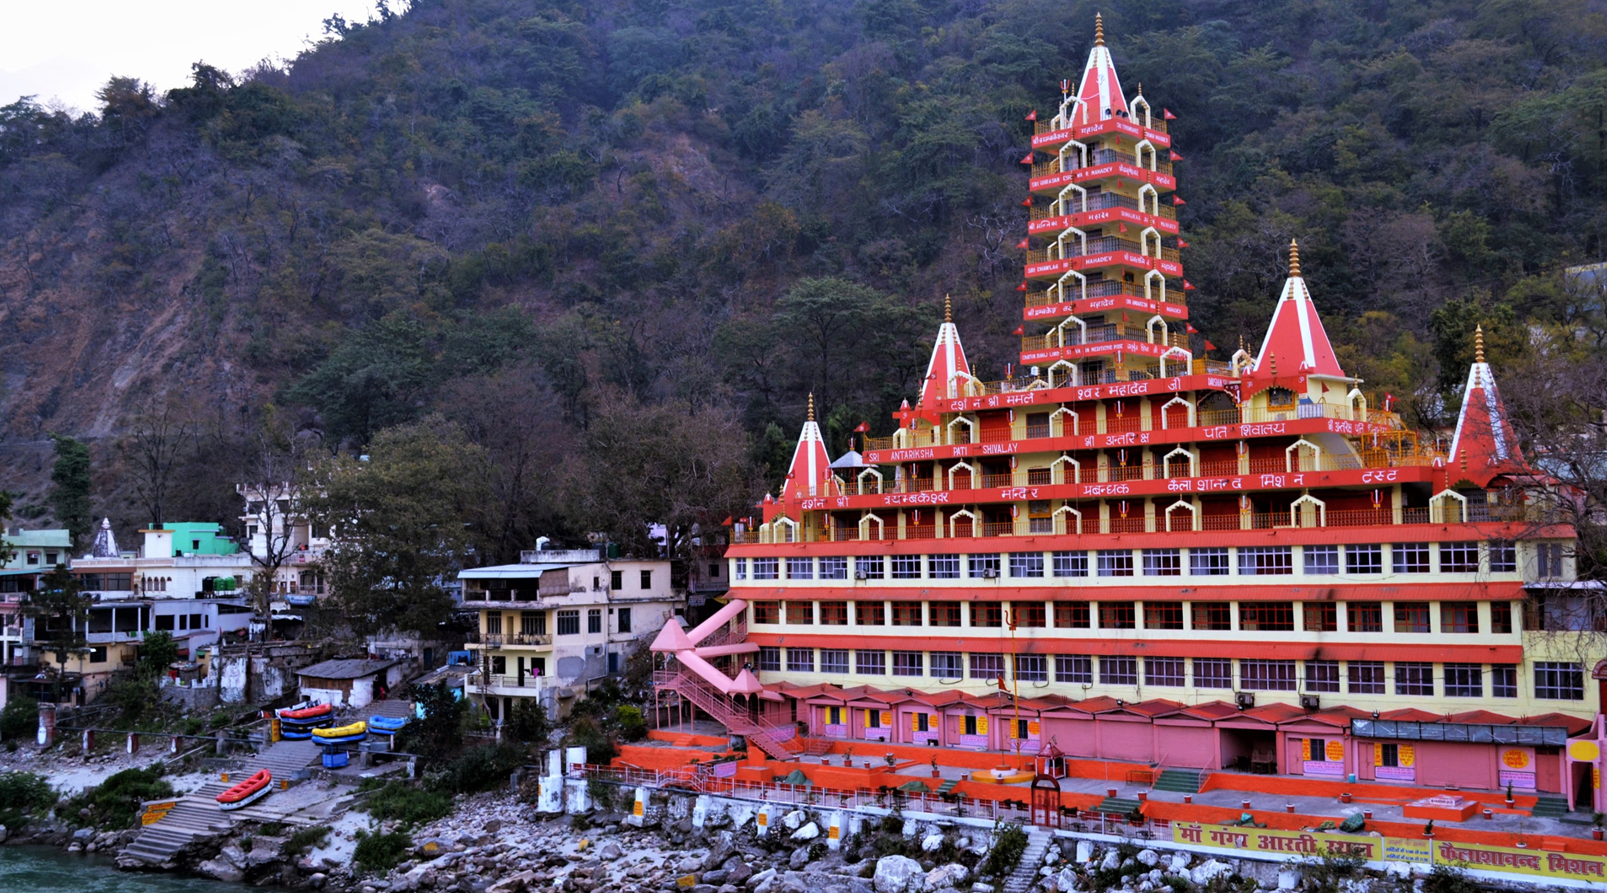 Tera Manzil Temple